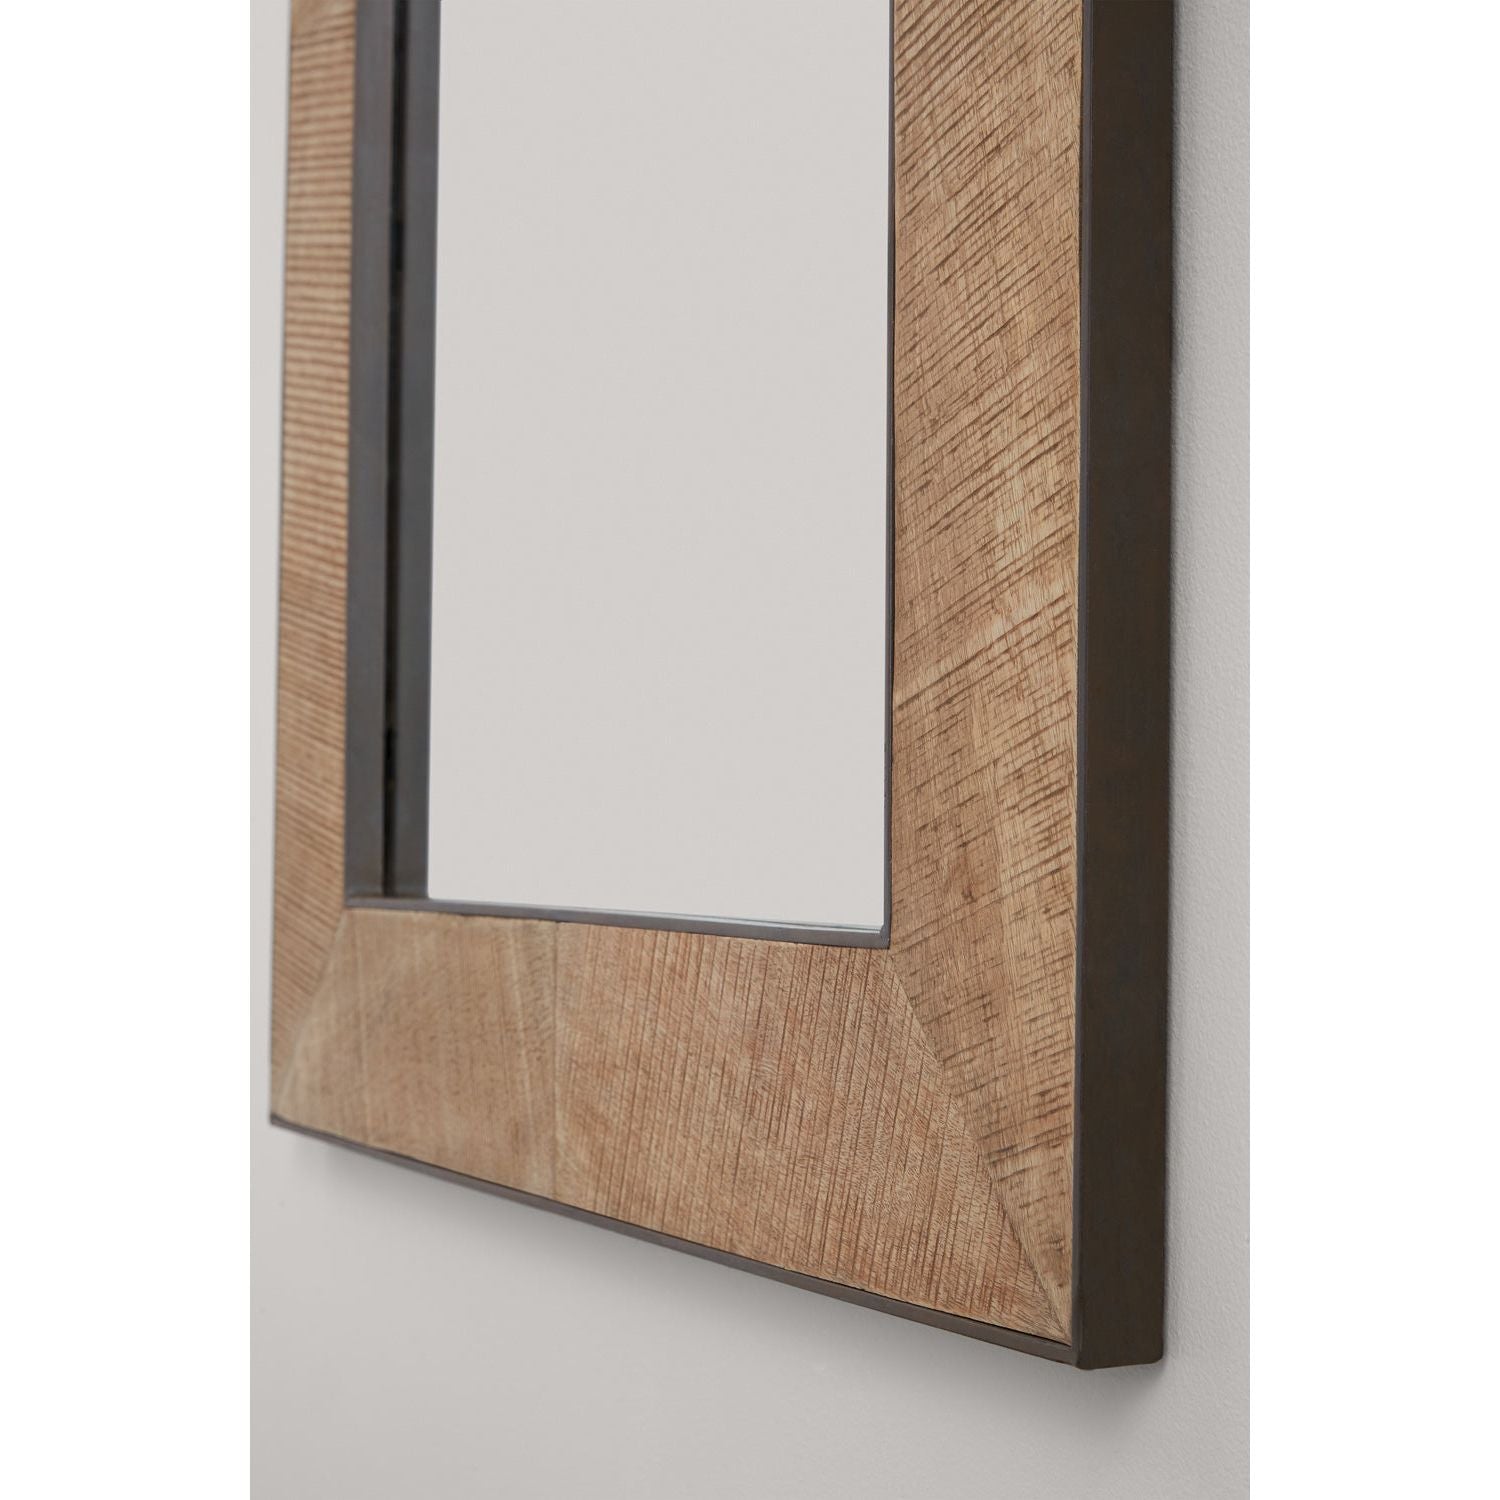 32"W x 46"H Rectangle Sawn Wood Mirror